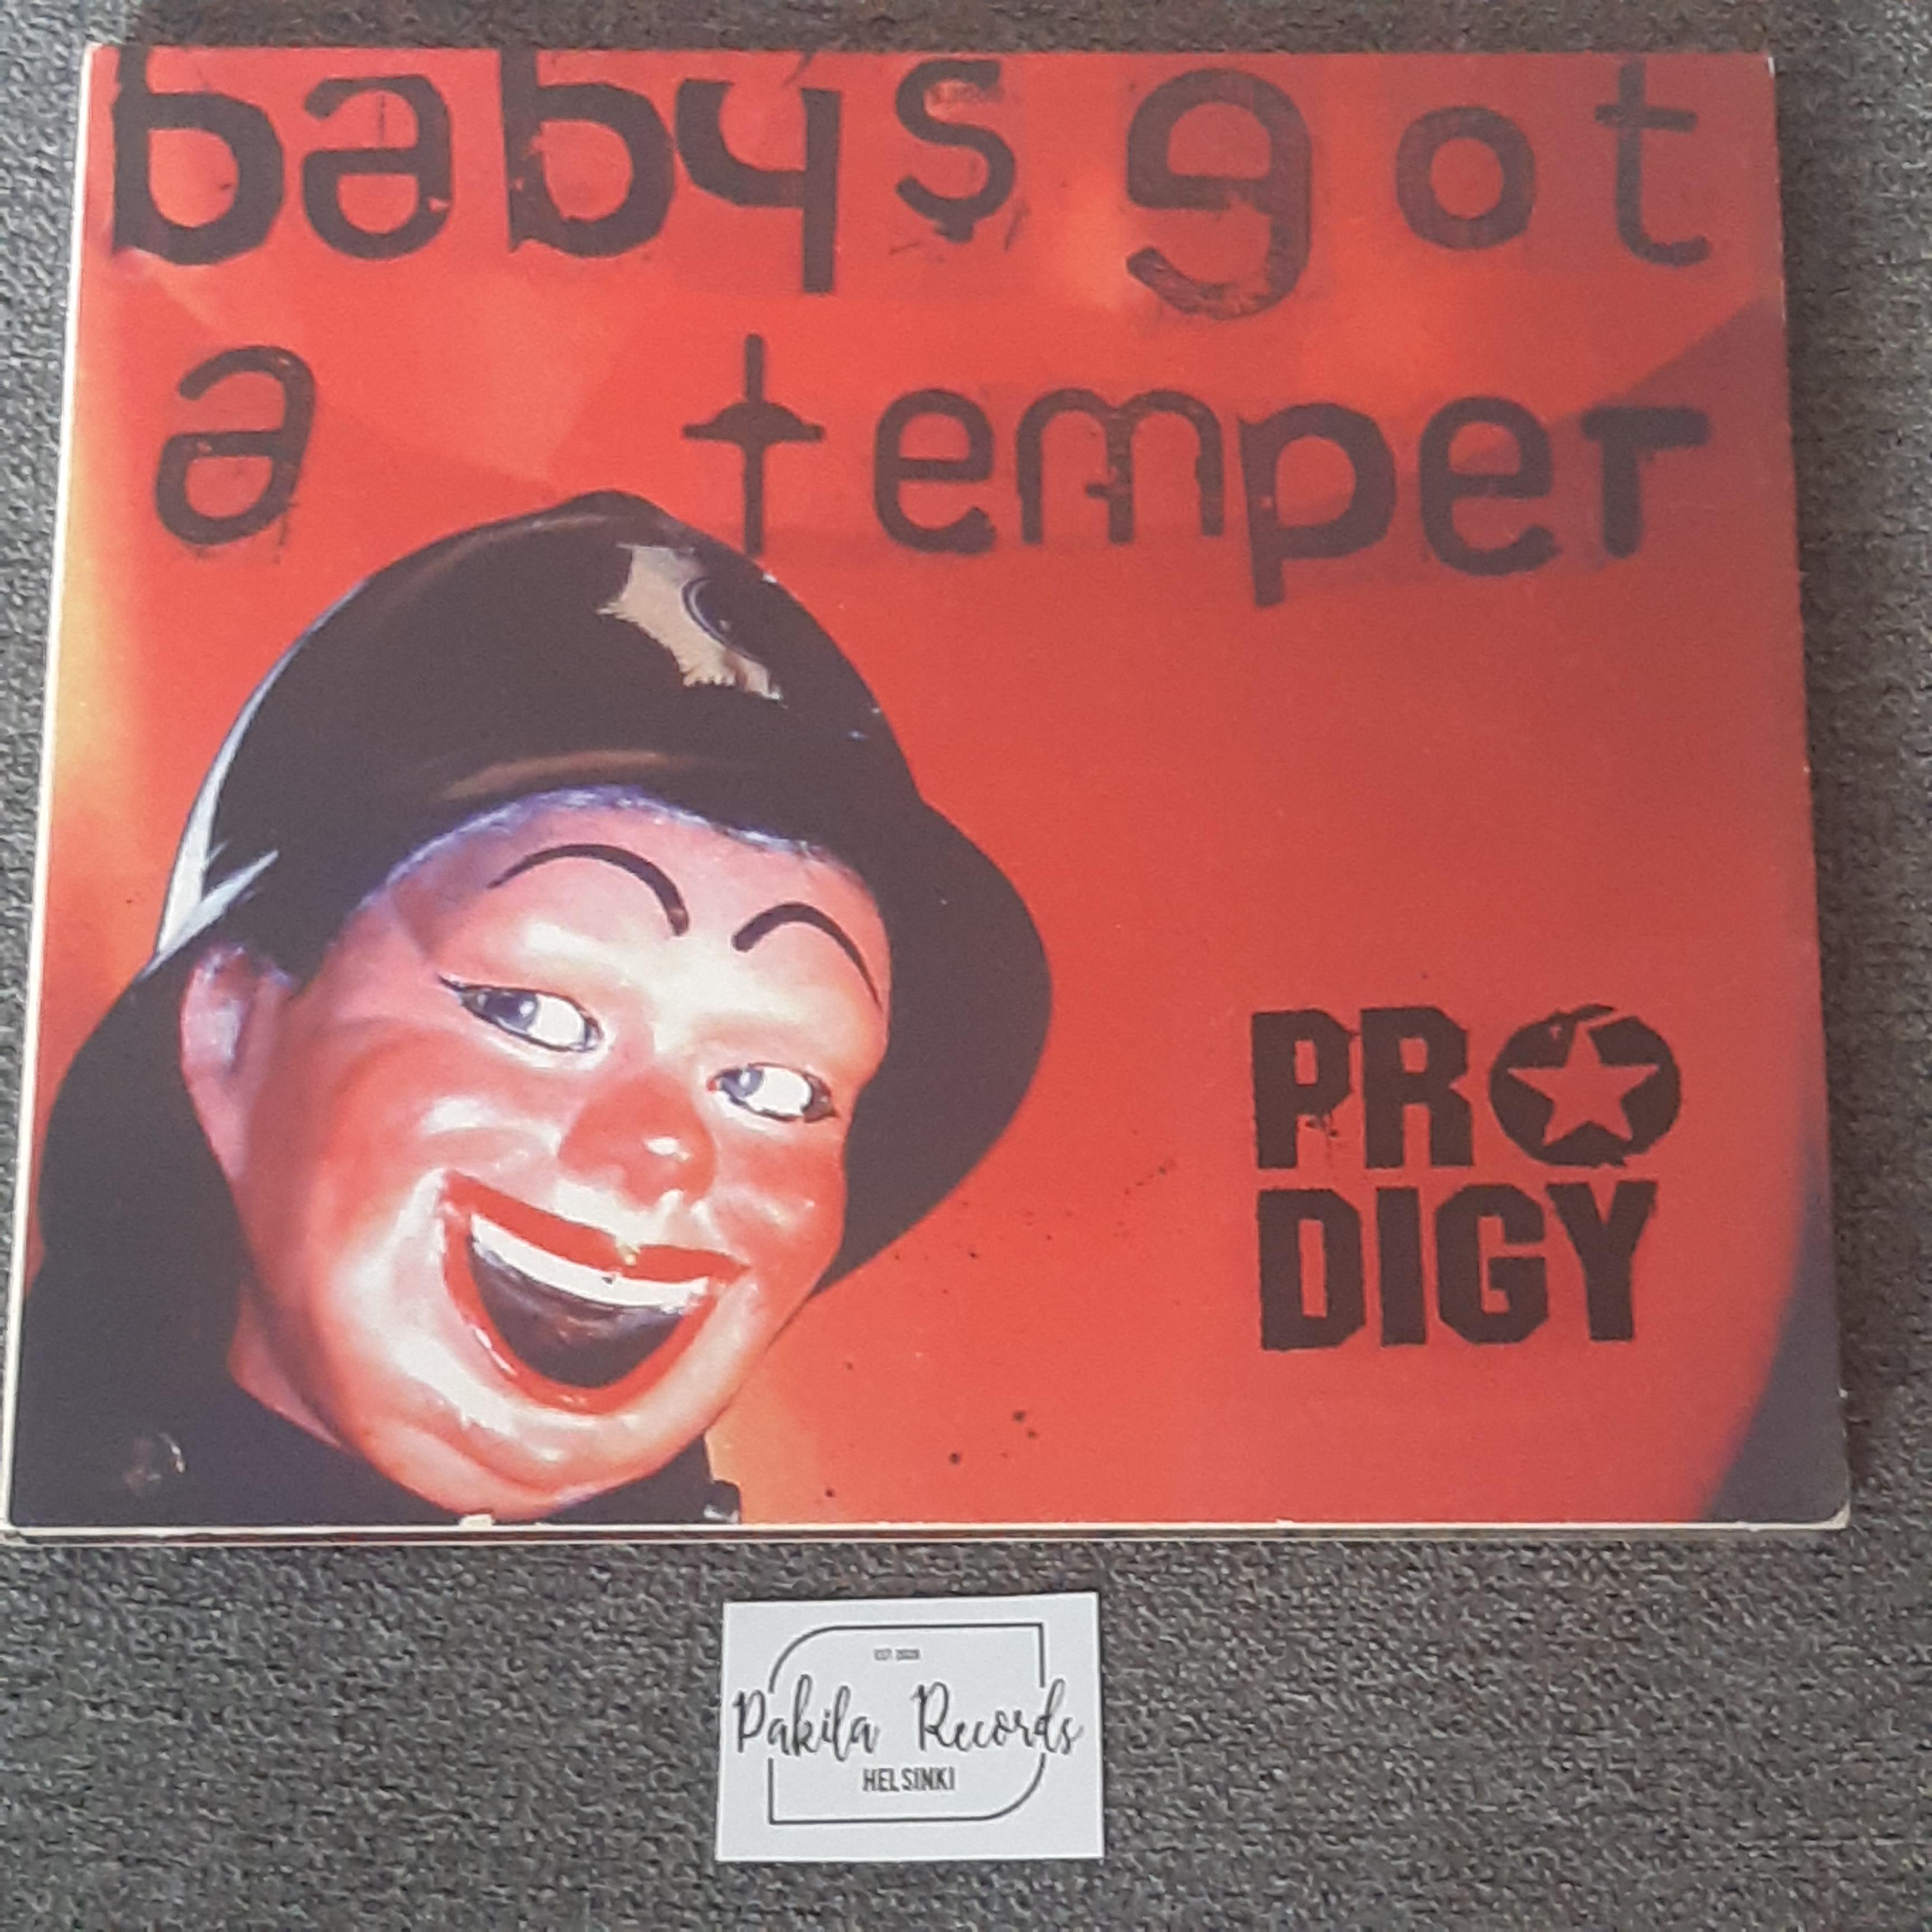 Prodigy - Baby's Got A Temper - CDS (käytetty)